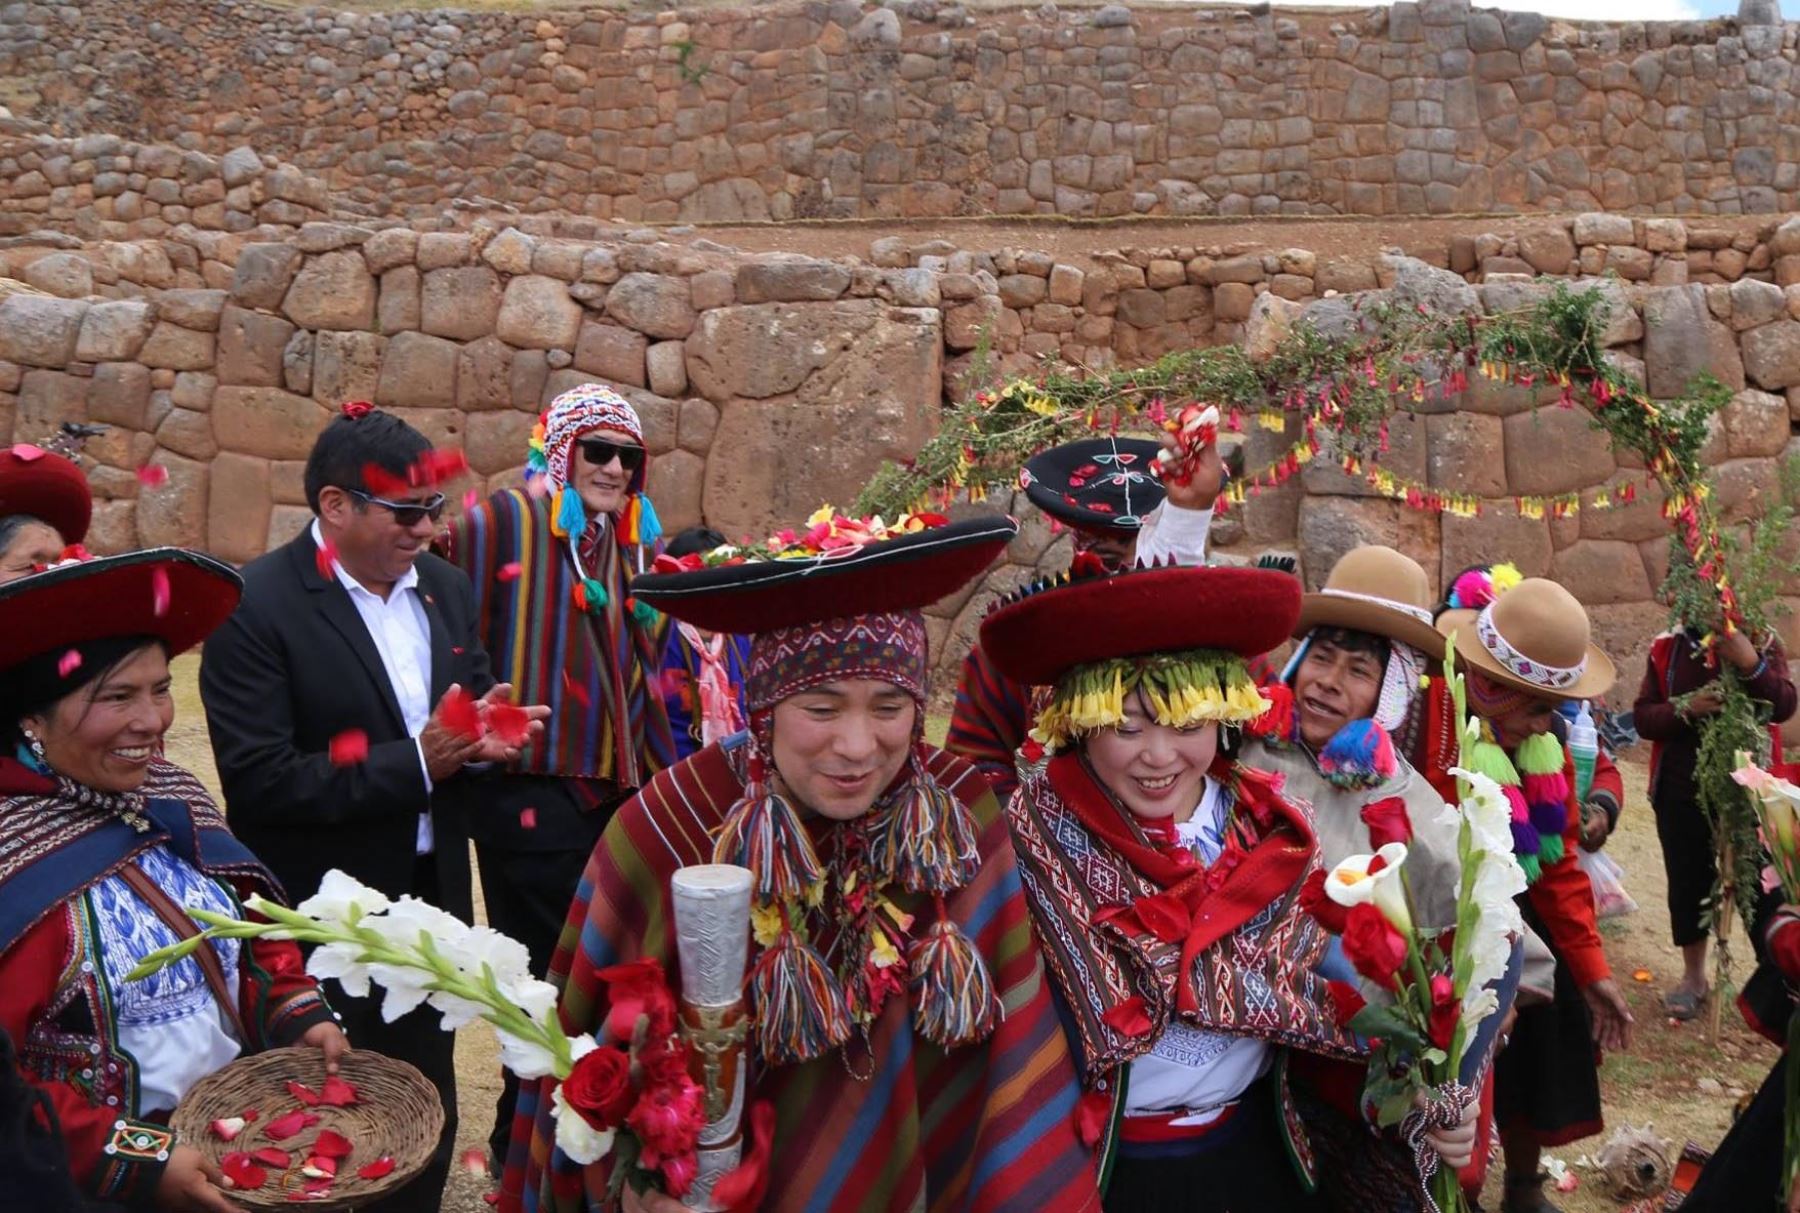 Con ceremonia andina pareja japonesa contrae matrimonio en Cusco | Noticias  | Agencia Peruana de Noticias Andina